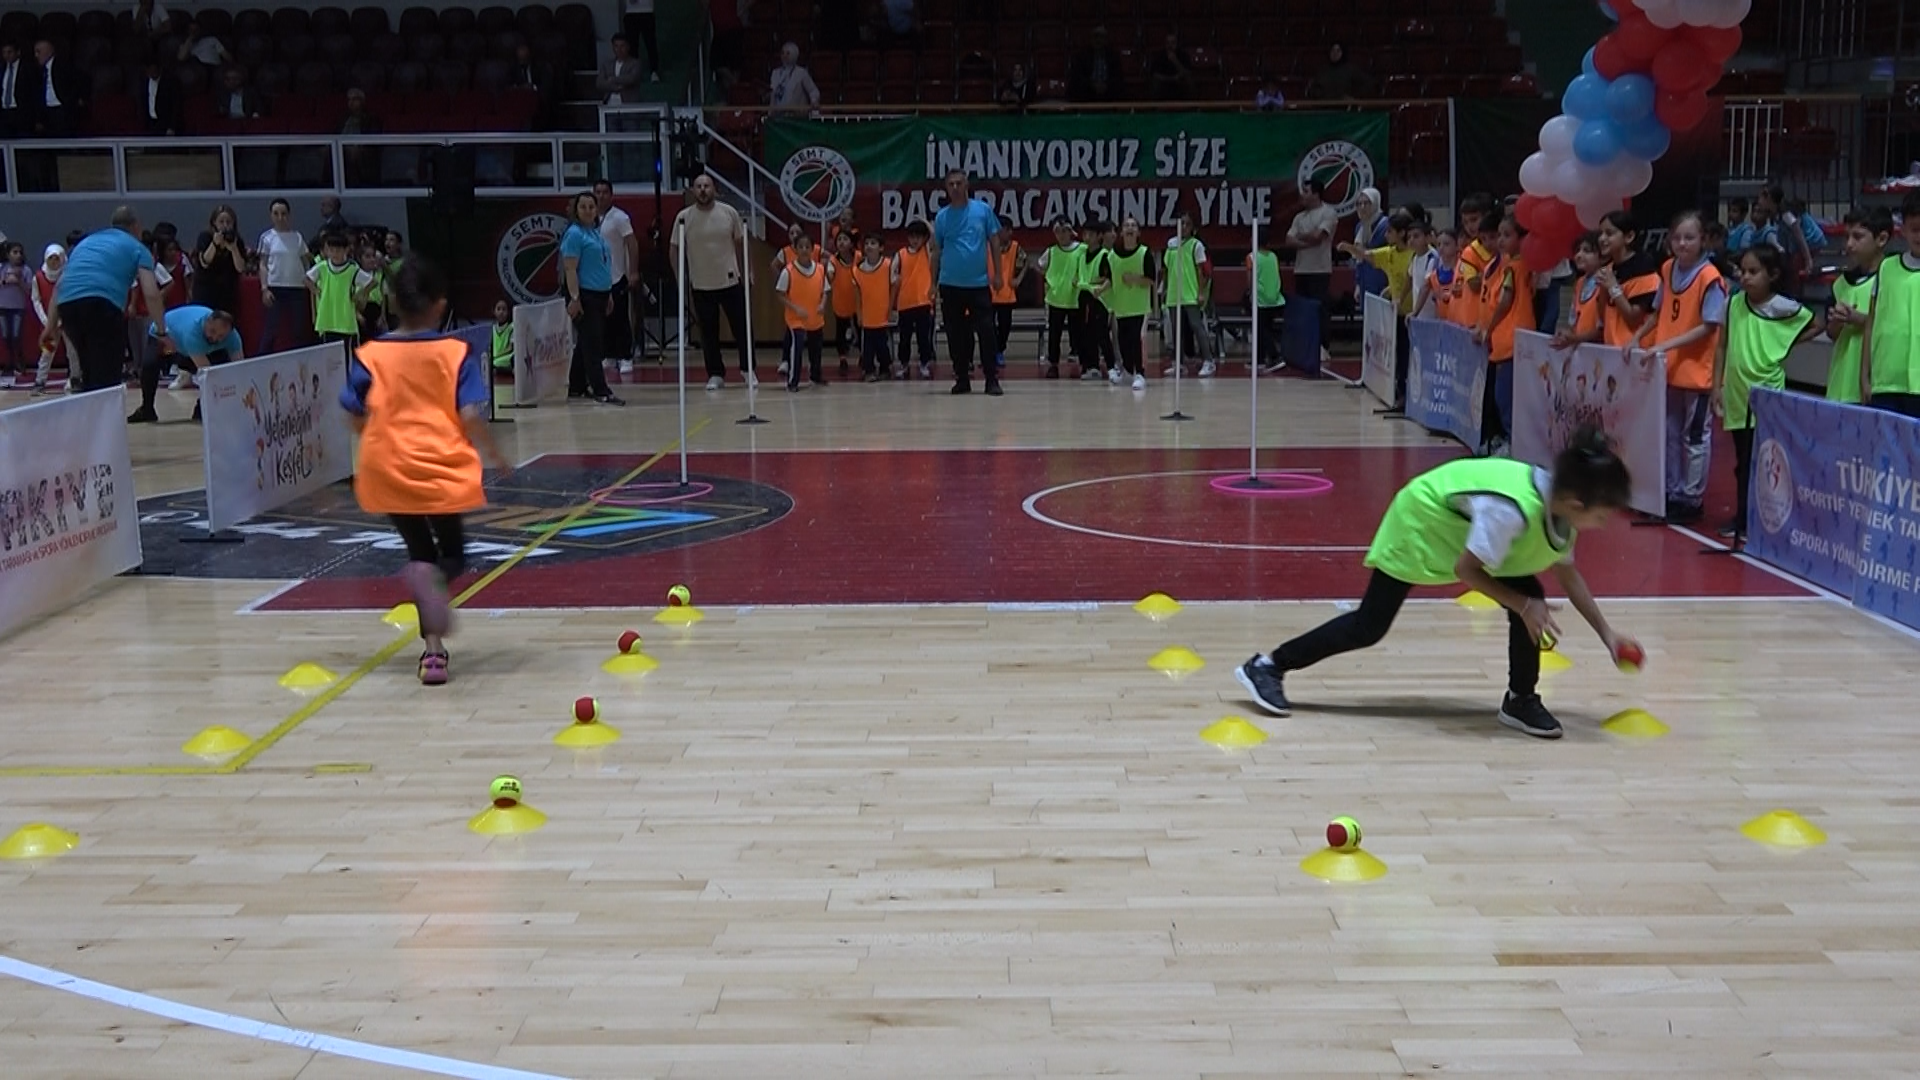 Yalova Cocuk Oyunlari Senlik Ortaokul Ilkokul Senlik Il Genclik Spor Milli Egitim (4)